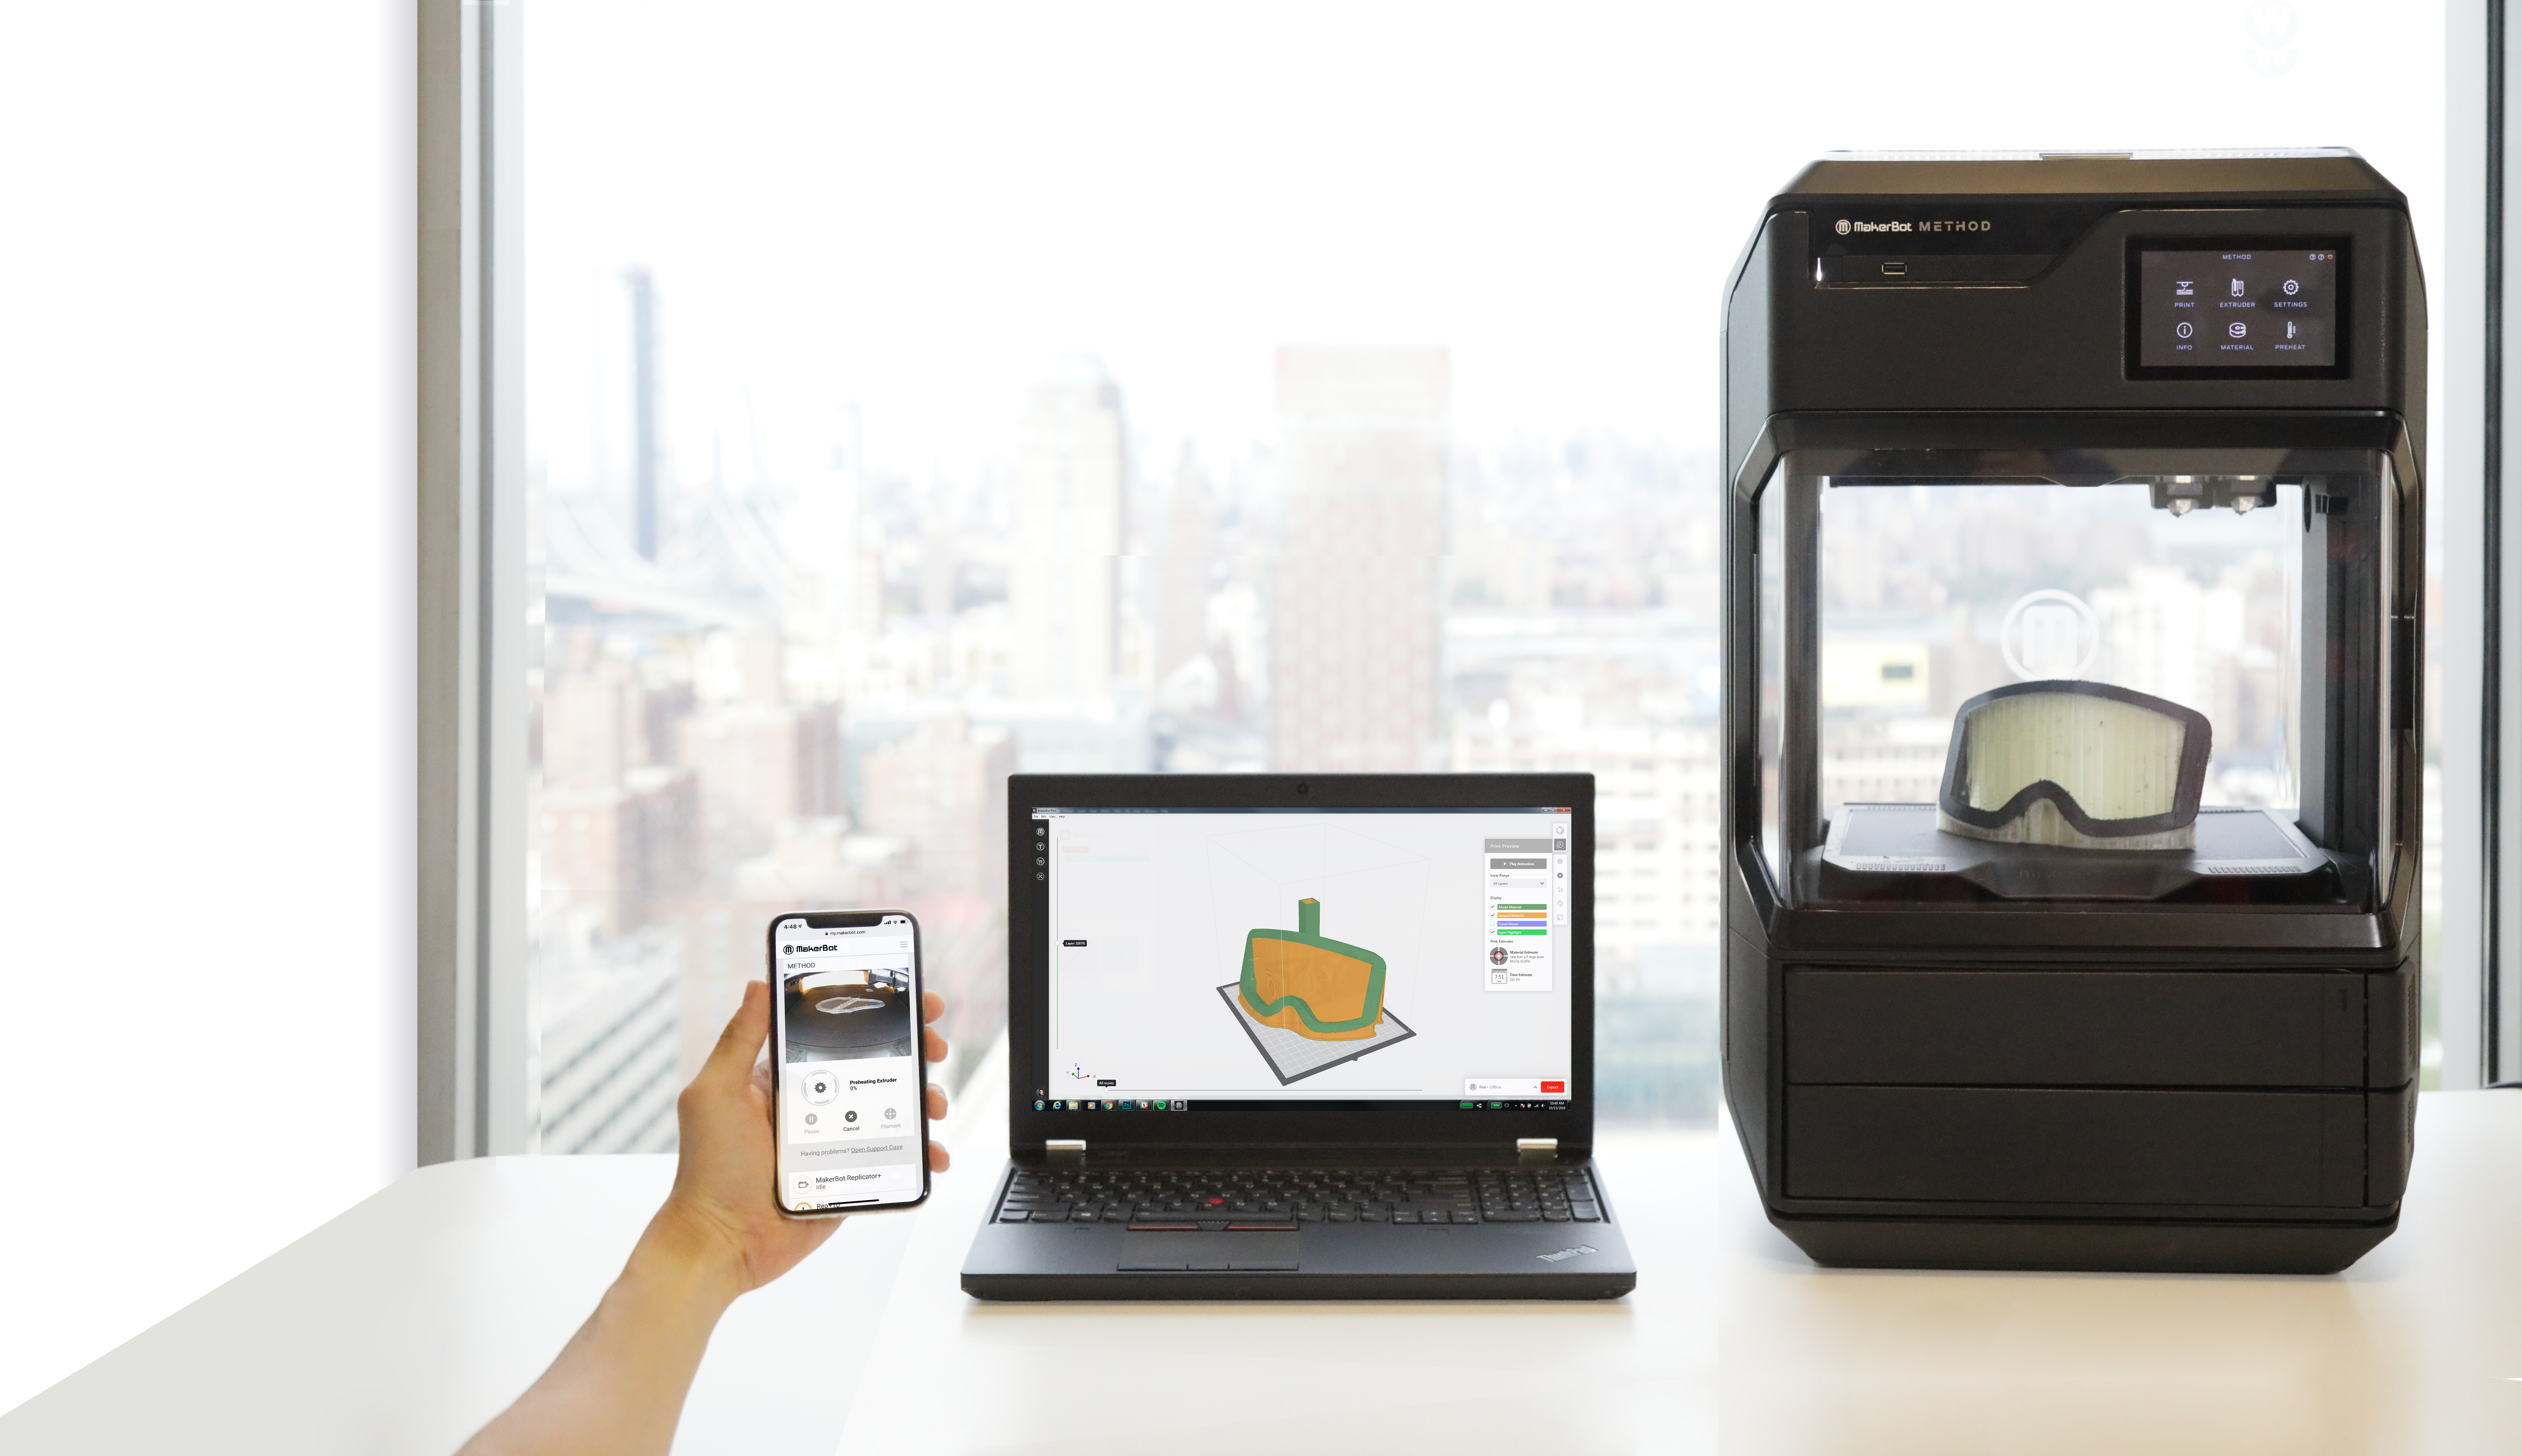  Empresa MakerBot lanza nueva impresora 3D de alto desempeño